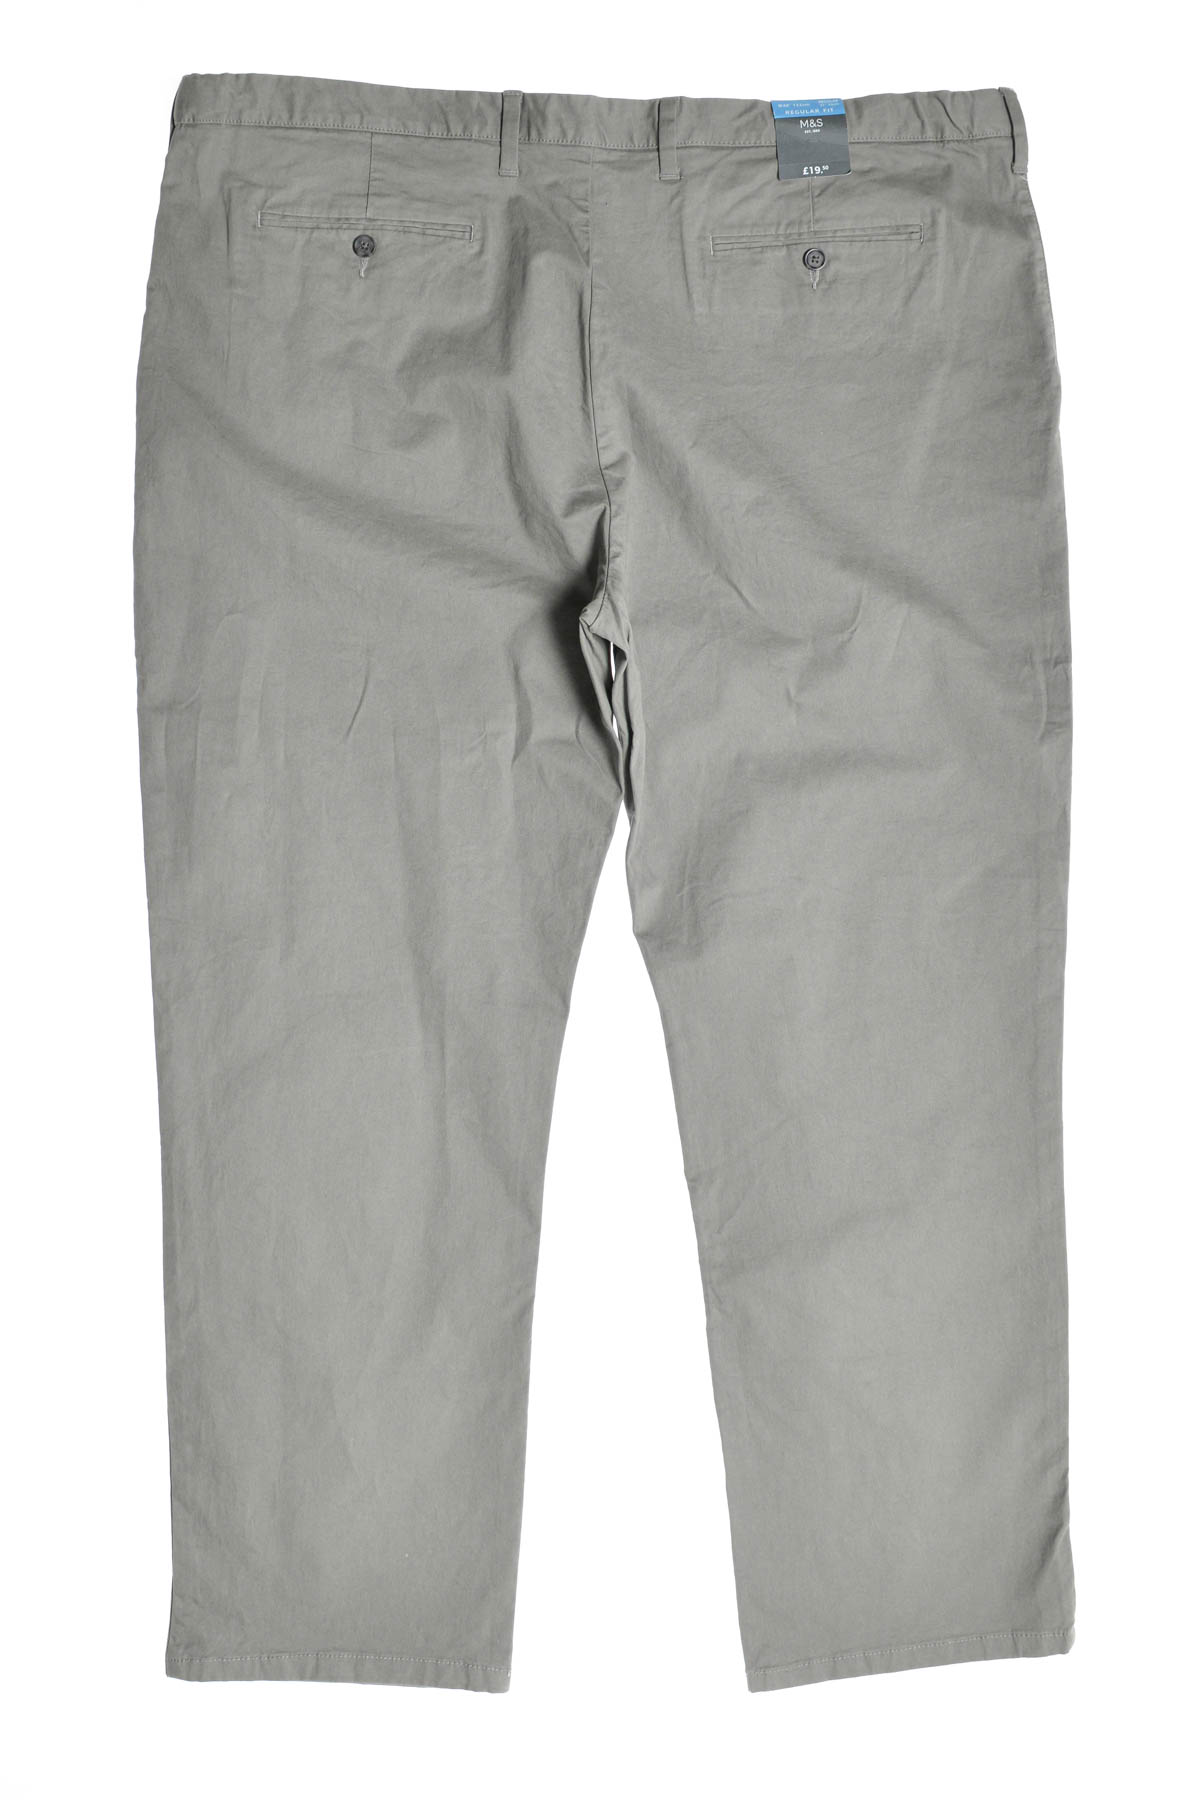 Men's trousers - M&S - 1